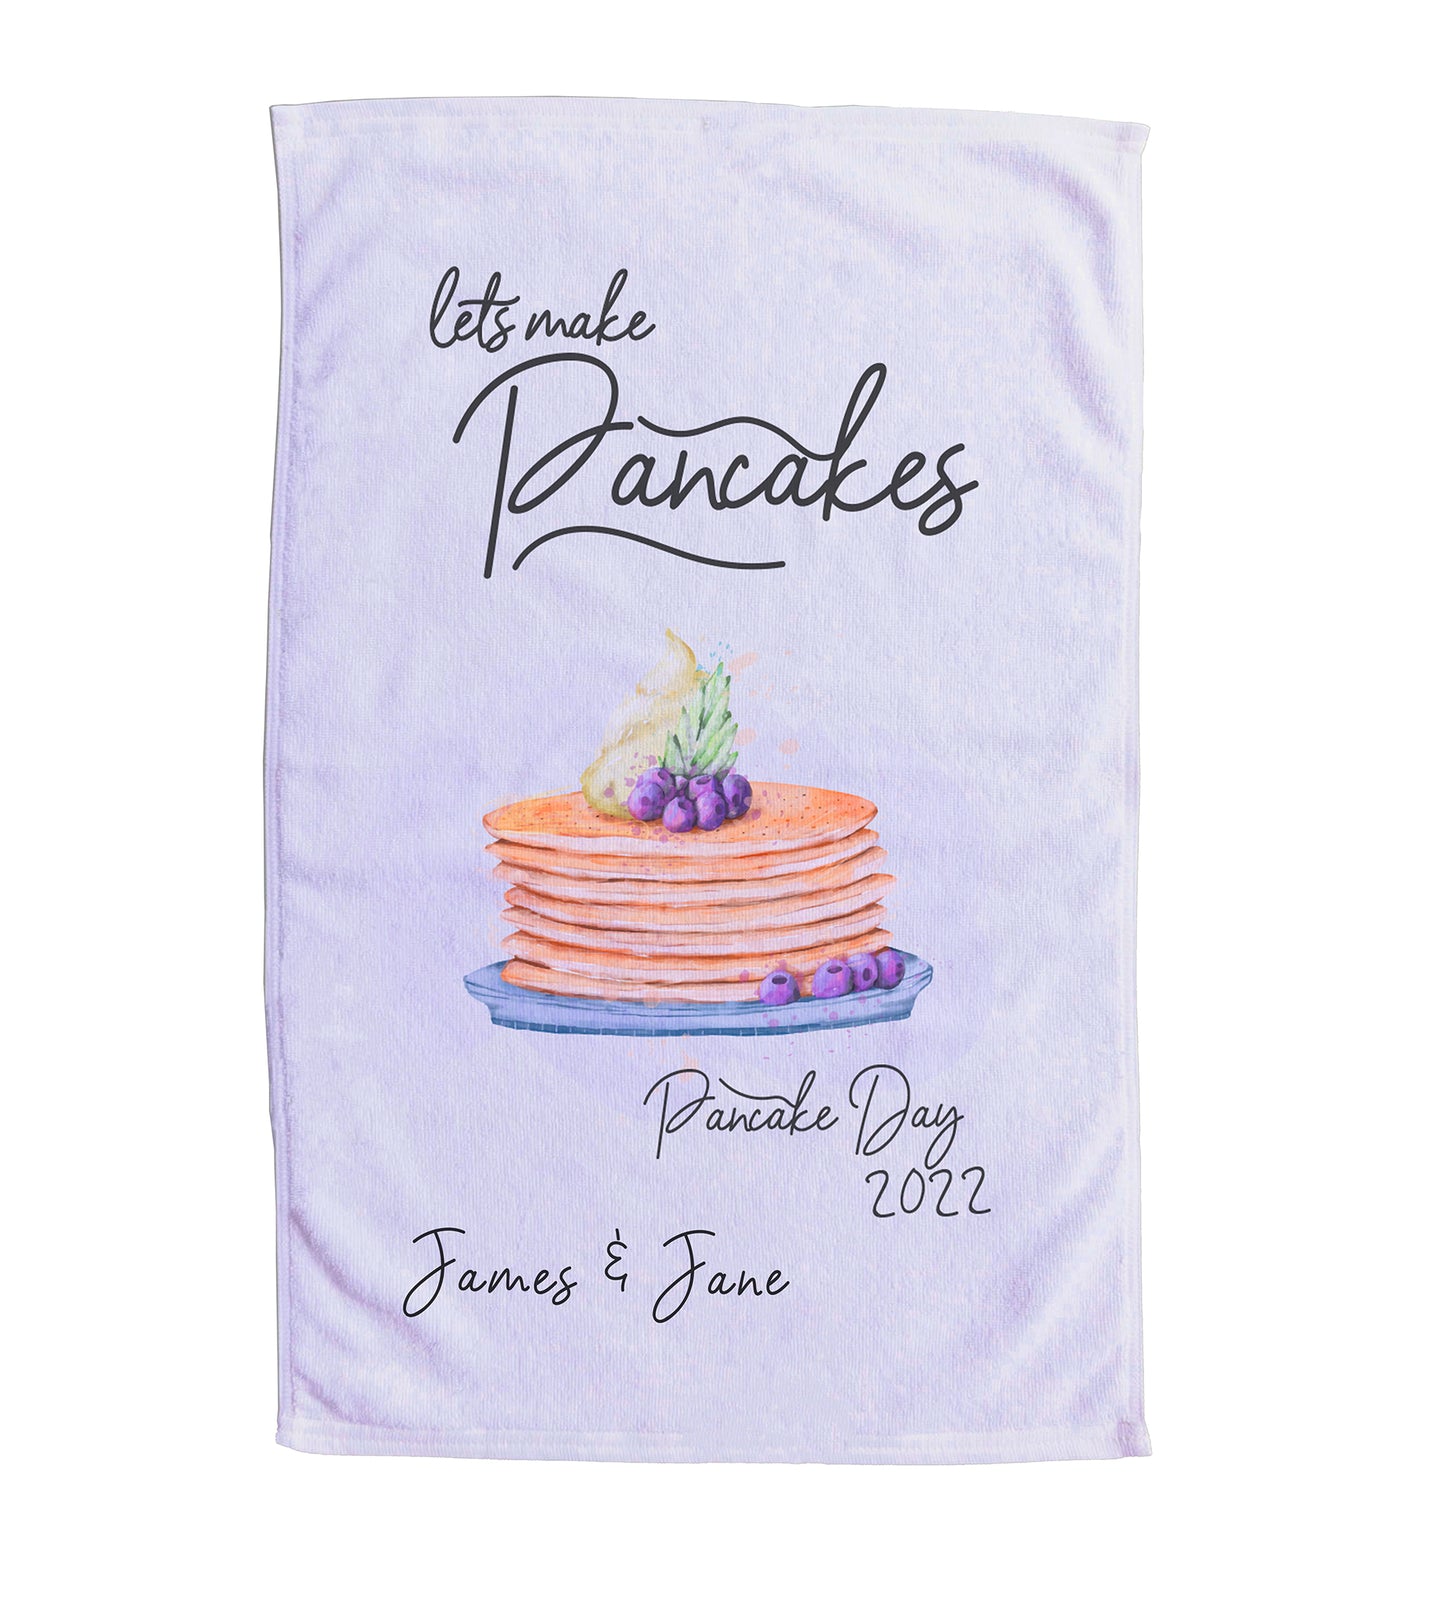 Personalised Pancake Day Tea Towel. Lets Make Pancakes. Pancake Day 2022. "James & Jane".